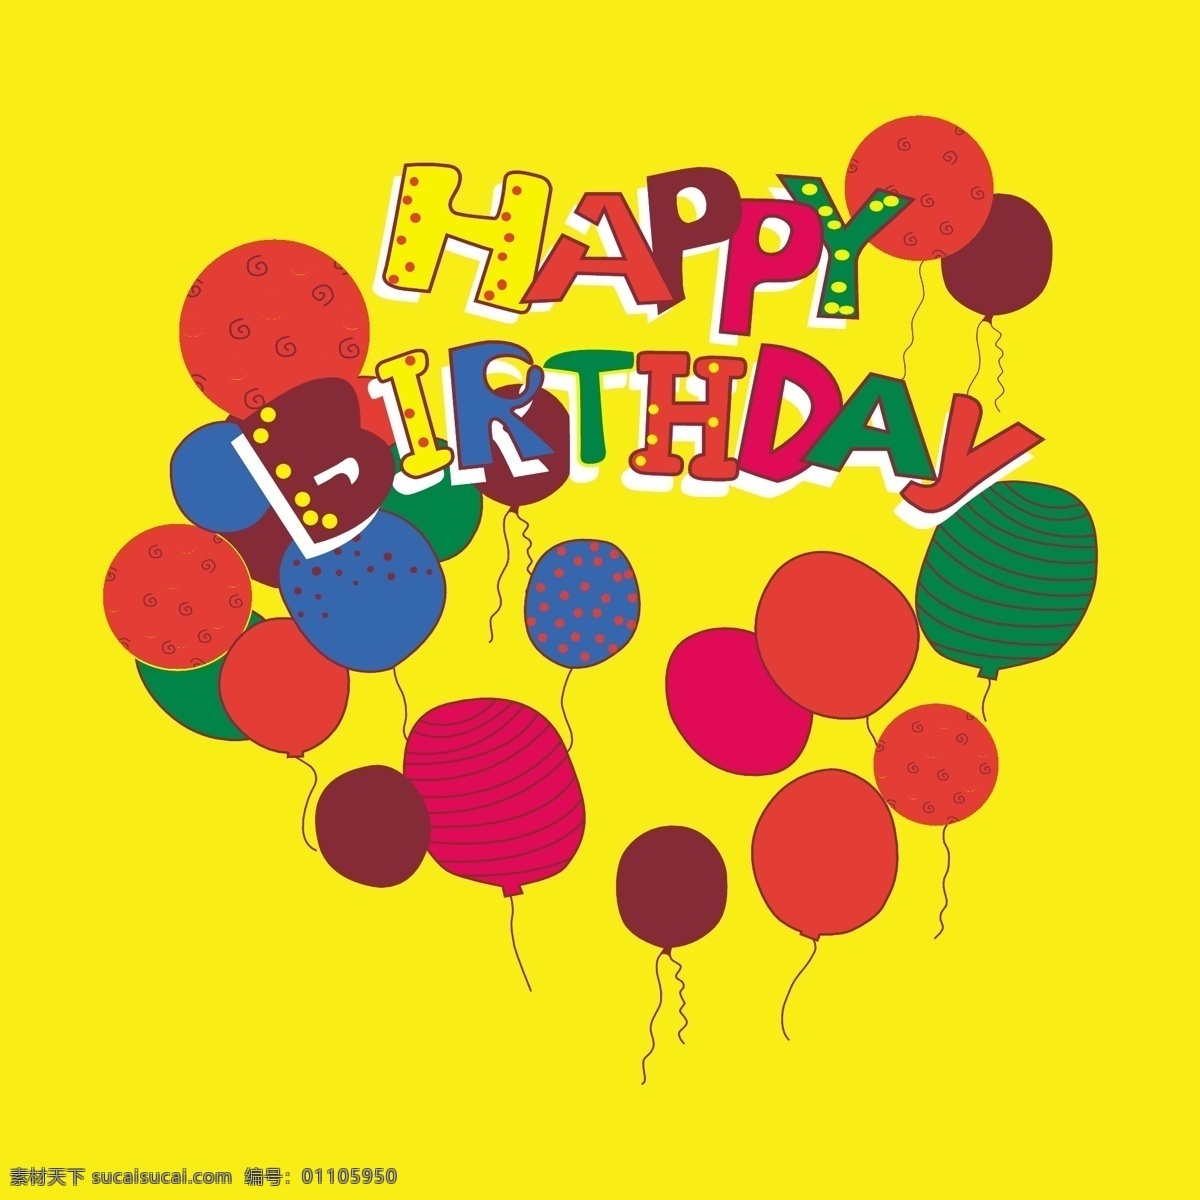 气球 生日 派对 卡通 卡通气球 生日派对素材 生日派对背景 彩色气球 生日快乐卡通 卡通设计